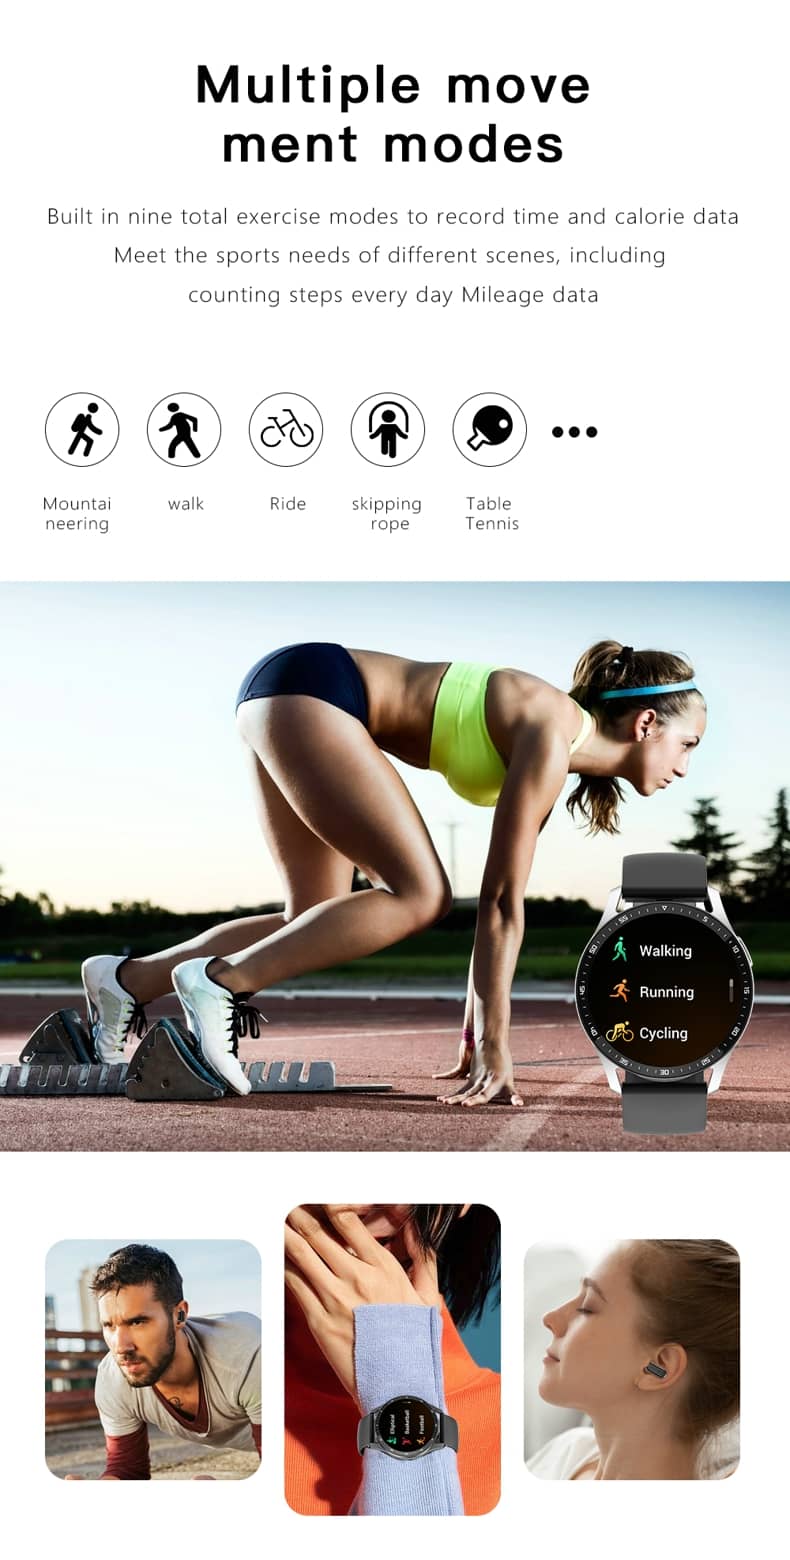 Findtime Smartwatch Buds 5 Smartwatch mit Ohrhörern